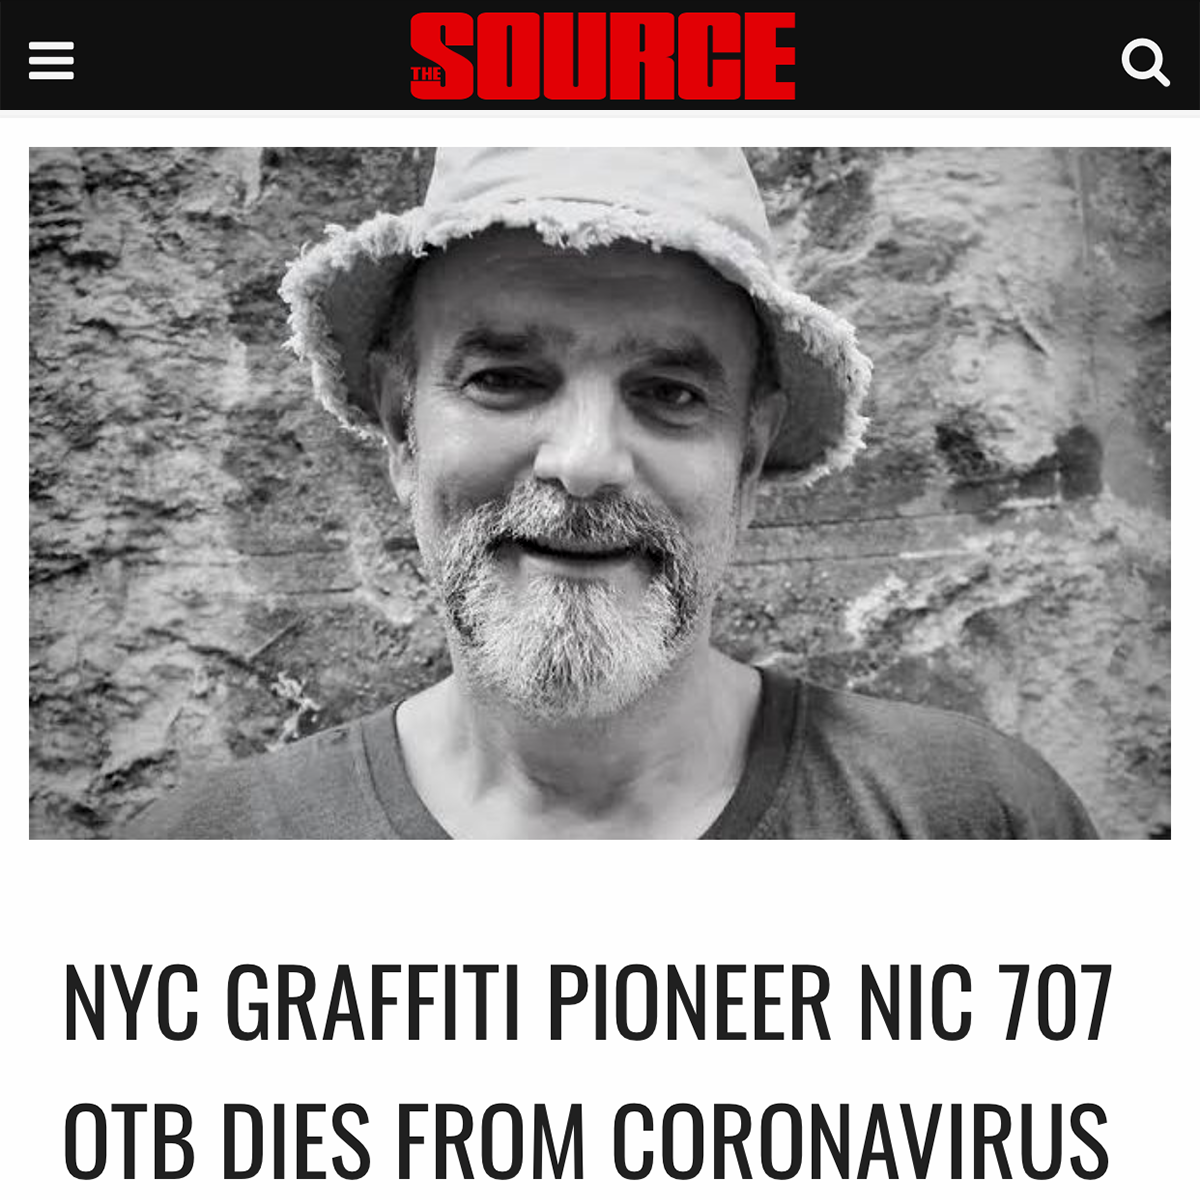 NYC GRAFFITI PIONEER NIC 707 OTB DIES FROM CORONAVIRUS